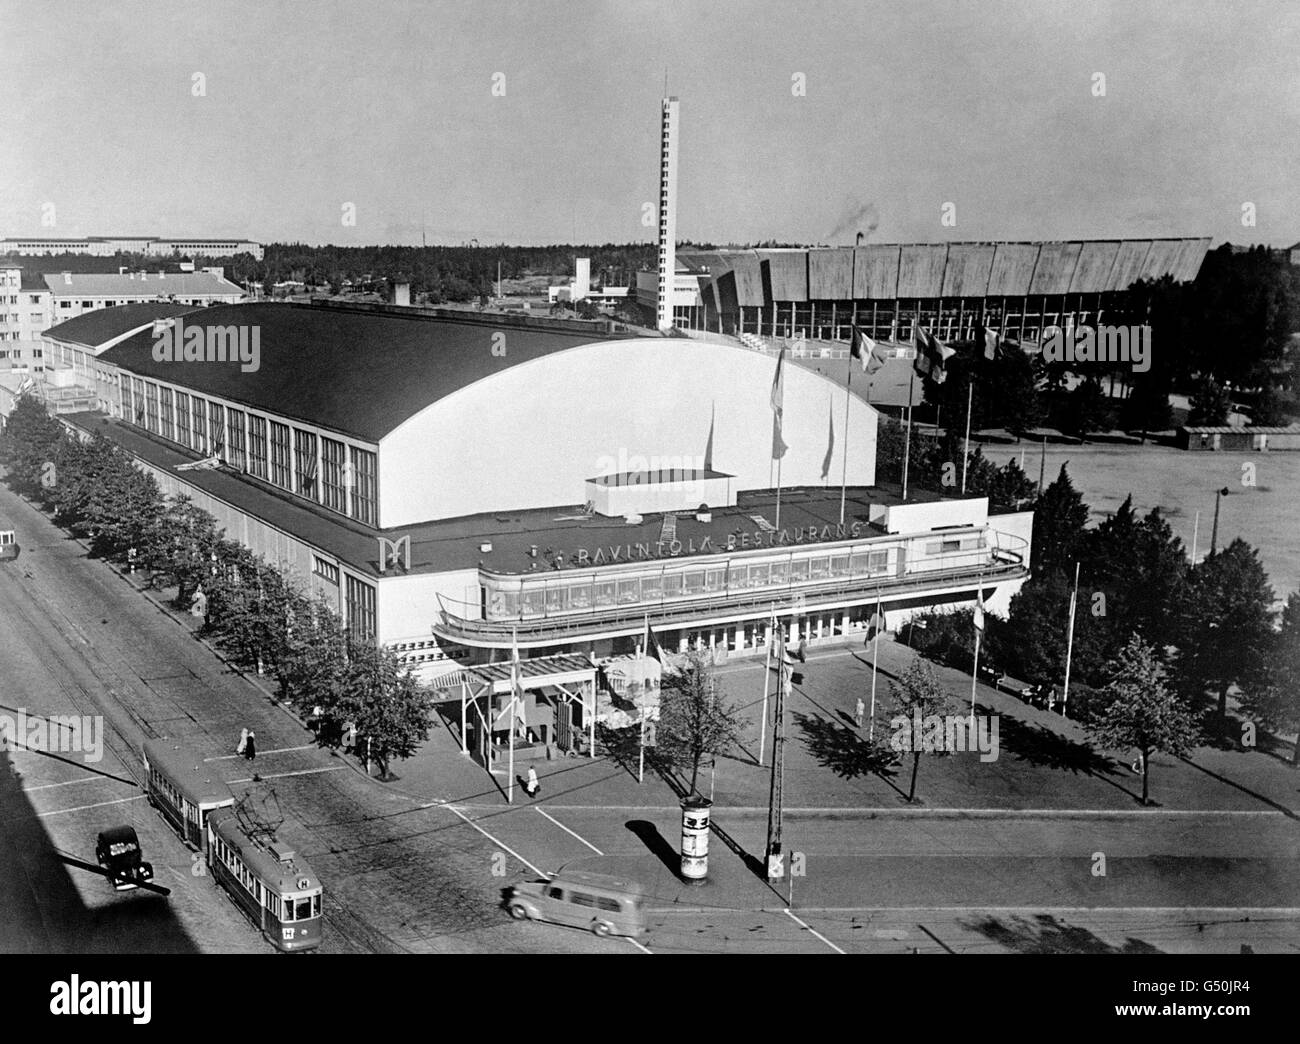 Leichtathletik - Olympische Spiele In Helsinki 1952. Die Messehalle in Helsinki, in der alle olympischen Hallensportarten ausgetragen werden. Stockfoto